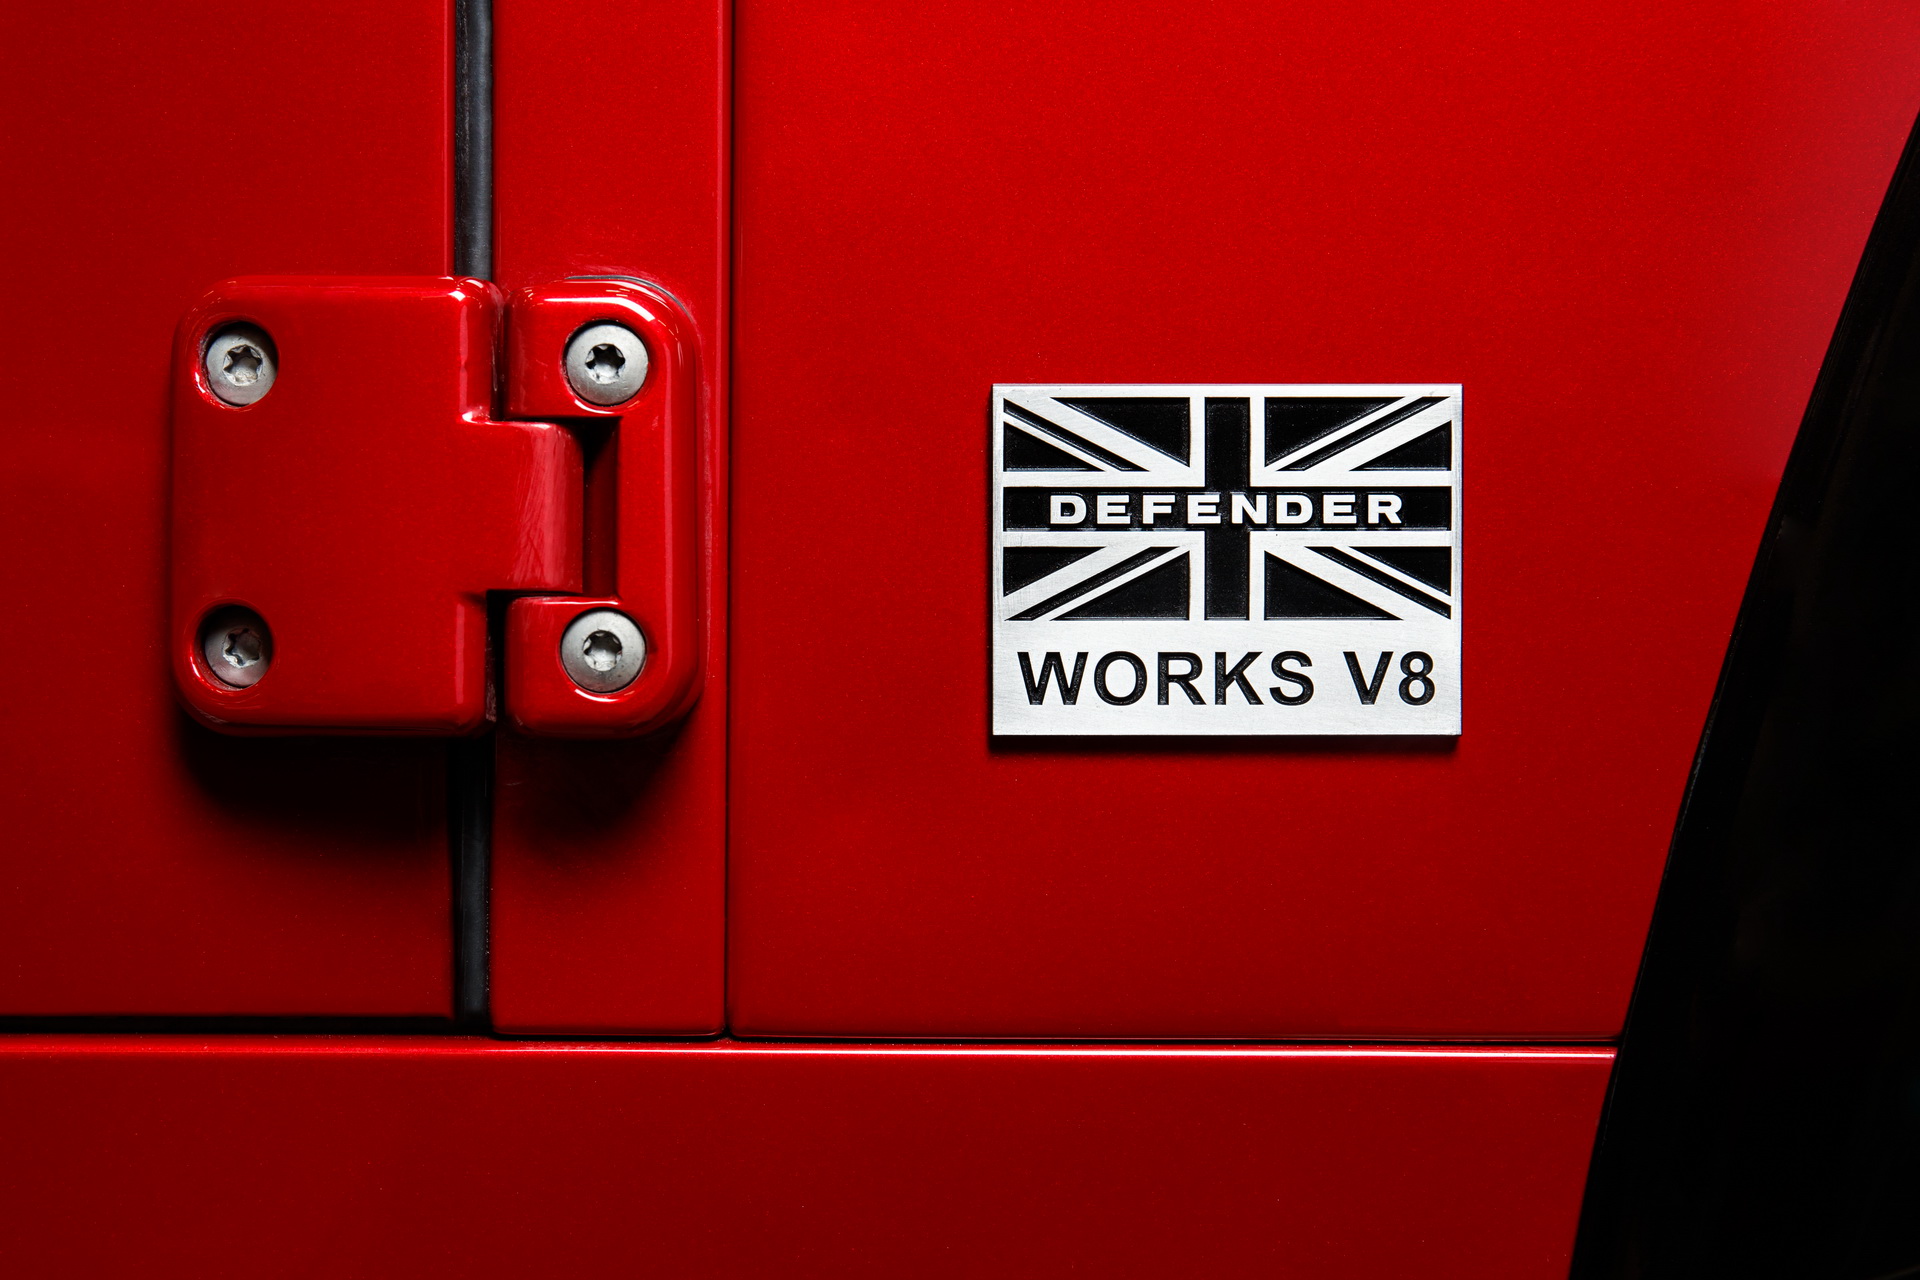 Special Edition Land Rover Defender Works V8